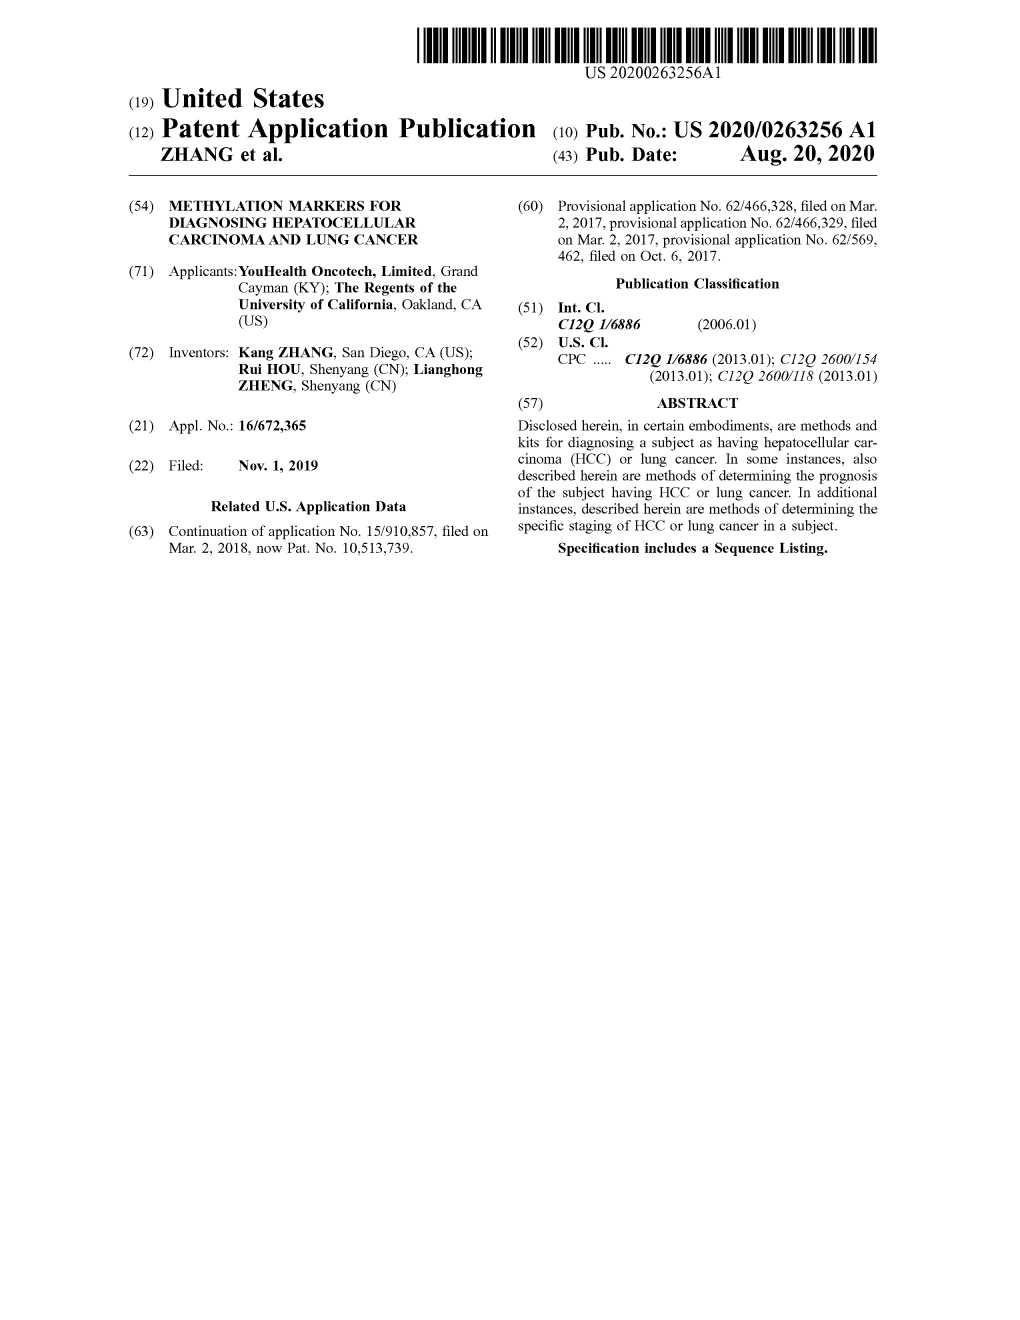 ( 12 ) Patent Application Publication ( 10 ) Pub . No .: US 2020/0263256 A1 ZHANG Et Al